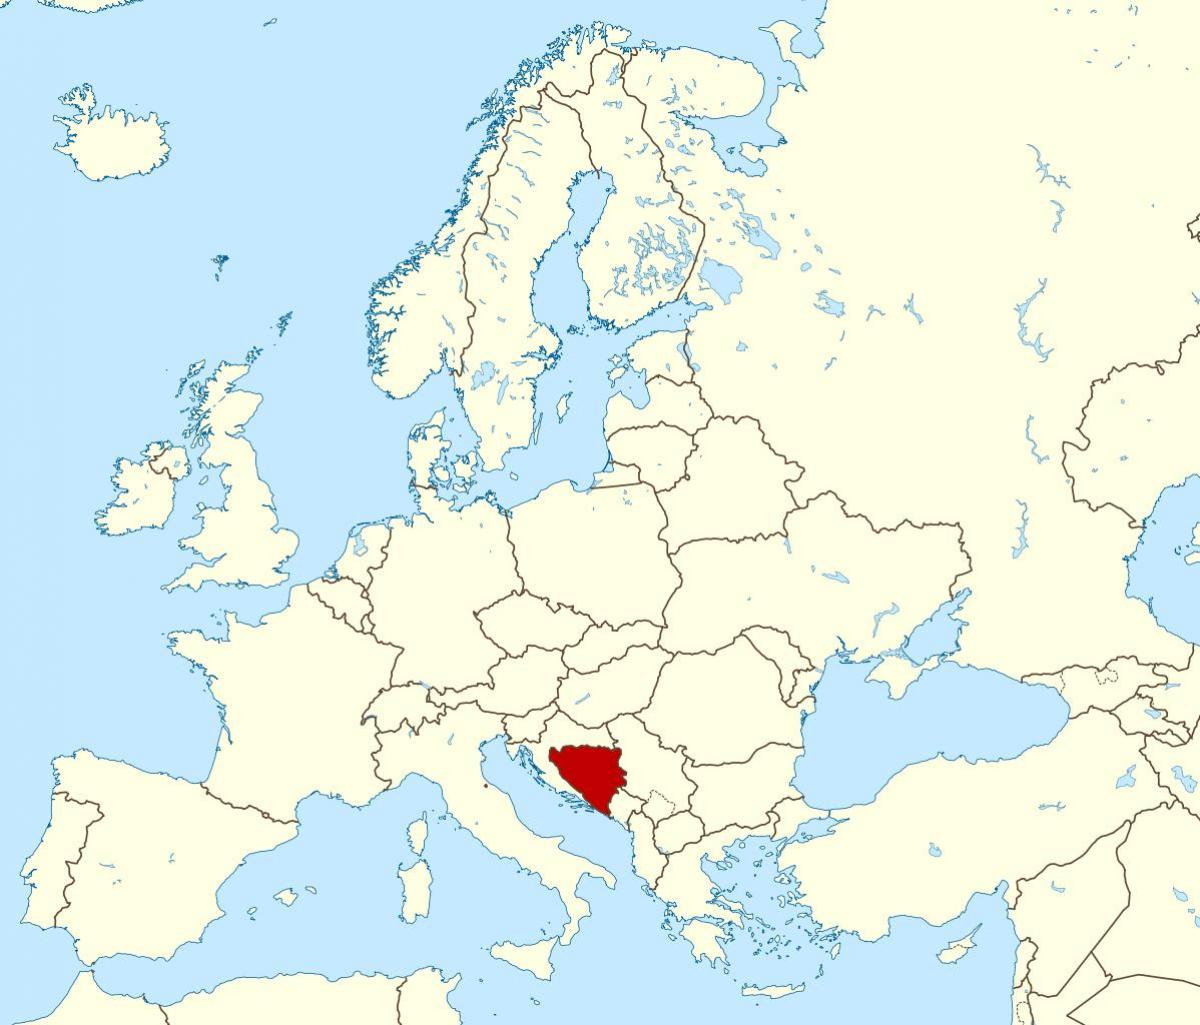 Kaart van Bosnië locatie op de wereld